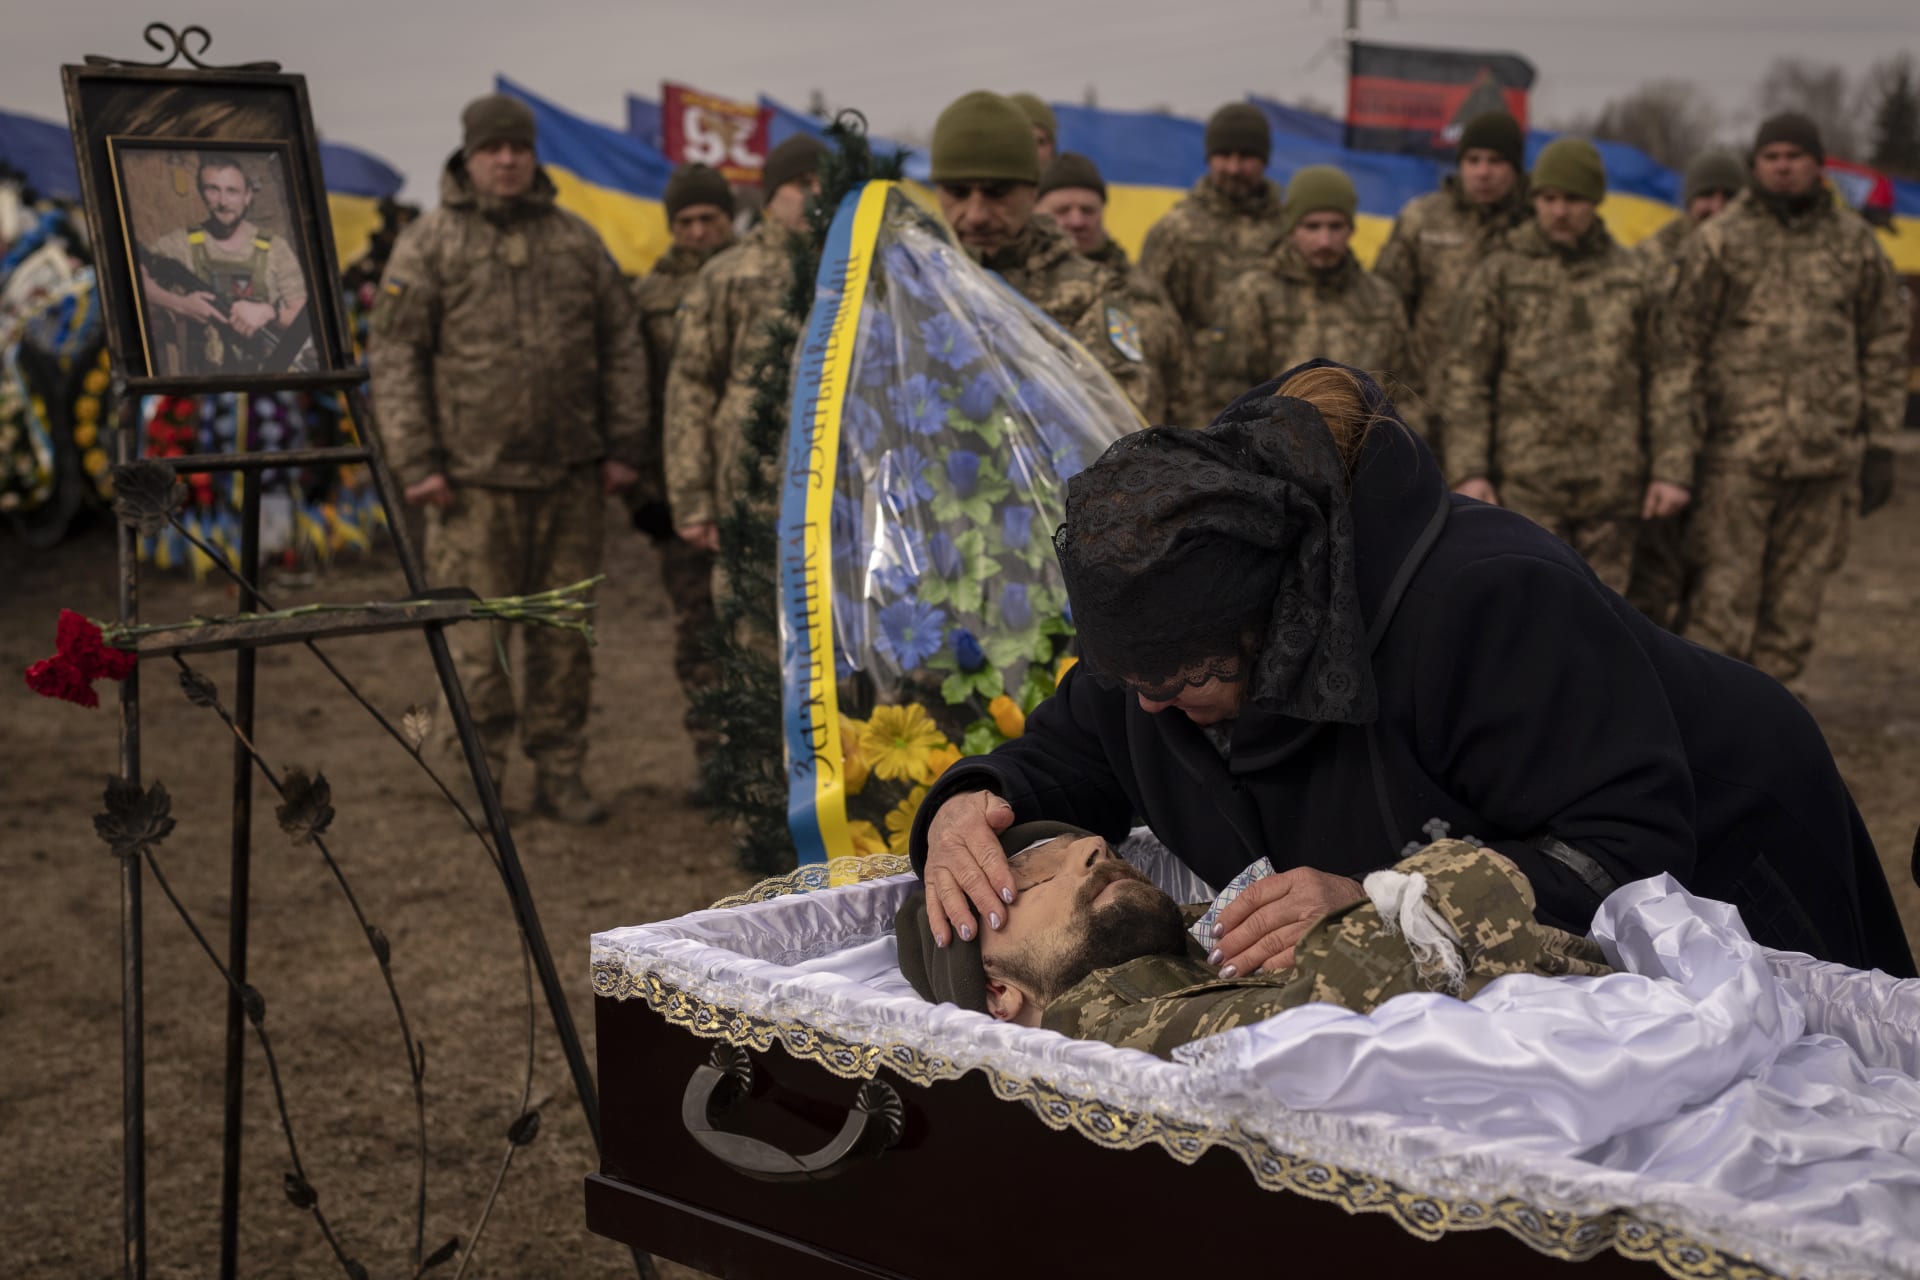 Matka na pohřbu v Boryspilu u Kyjeva oplakává smrt svého syna, který padl v bojích s Rusy u Bachmutu